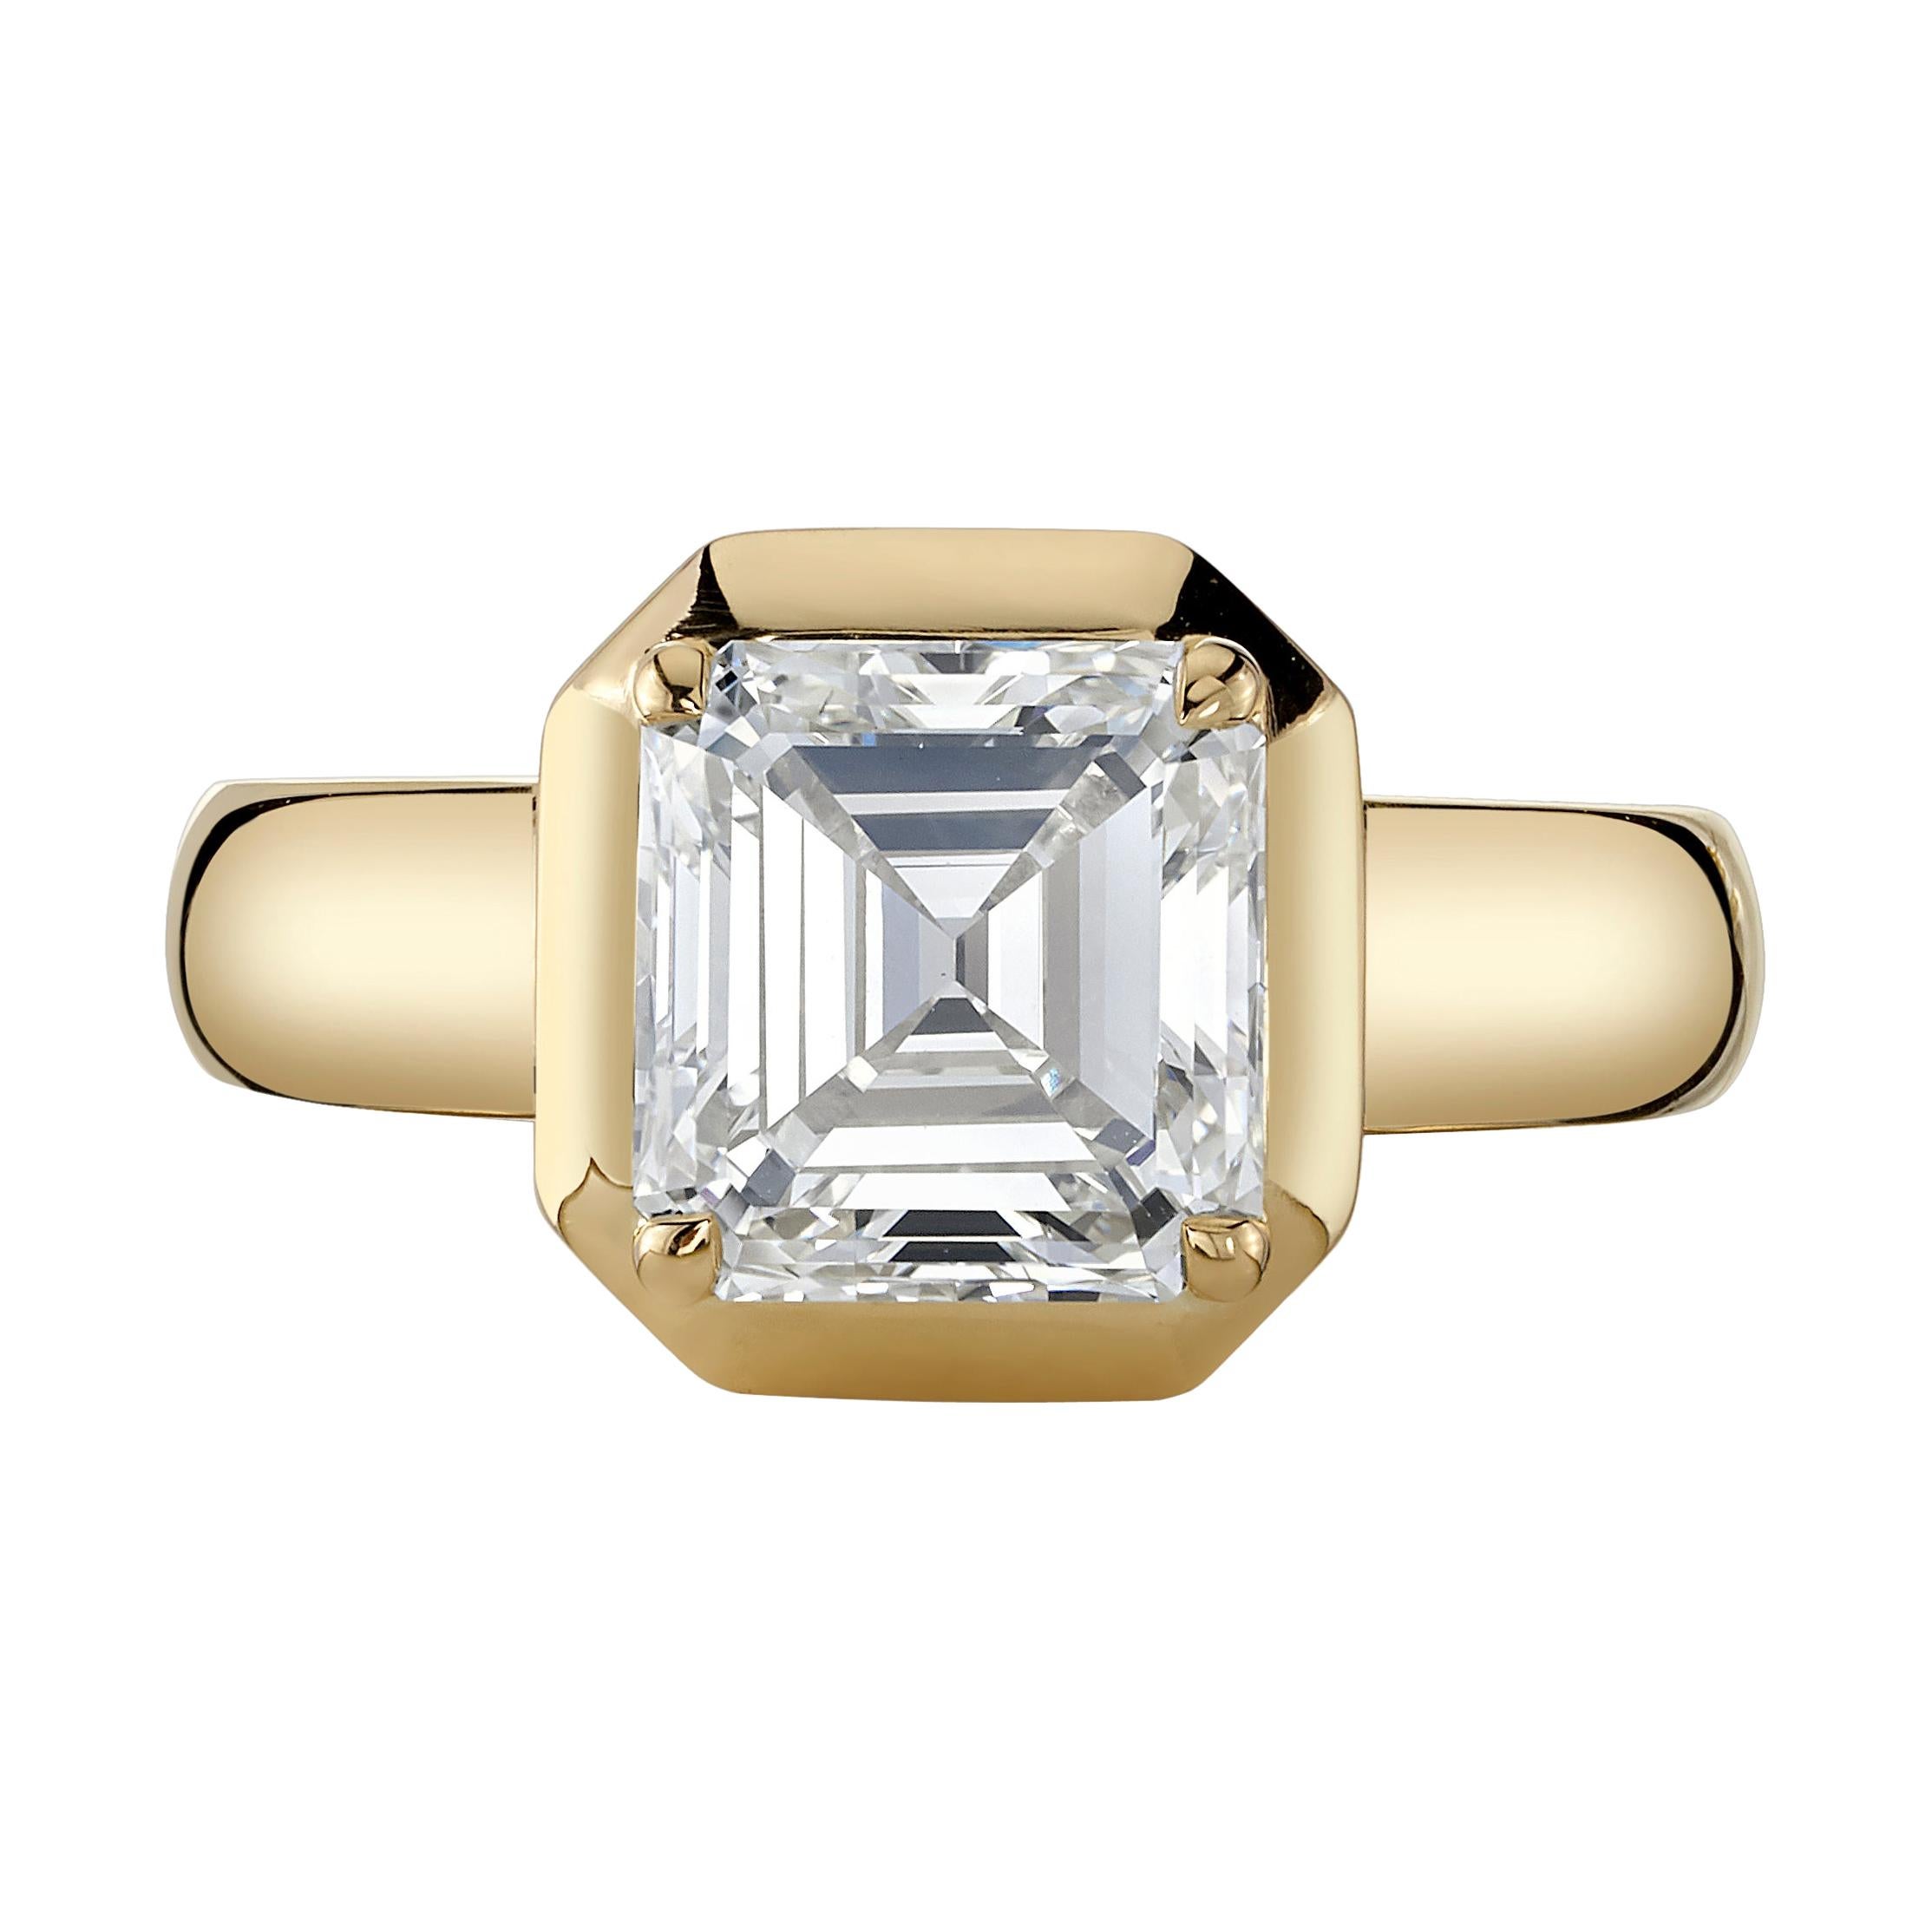 2.64 Carat Asscher Cut Diamond Set in a Handcrafted 18 Karat Yellow Gold Ring